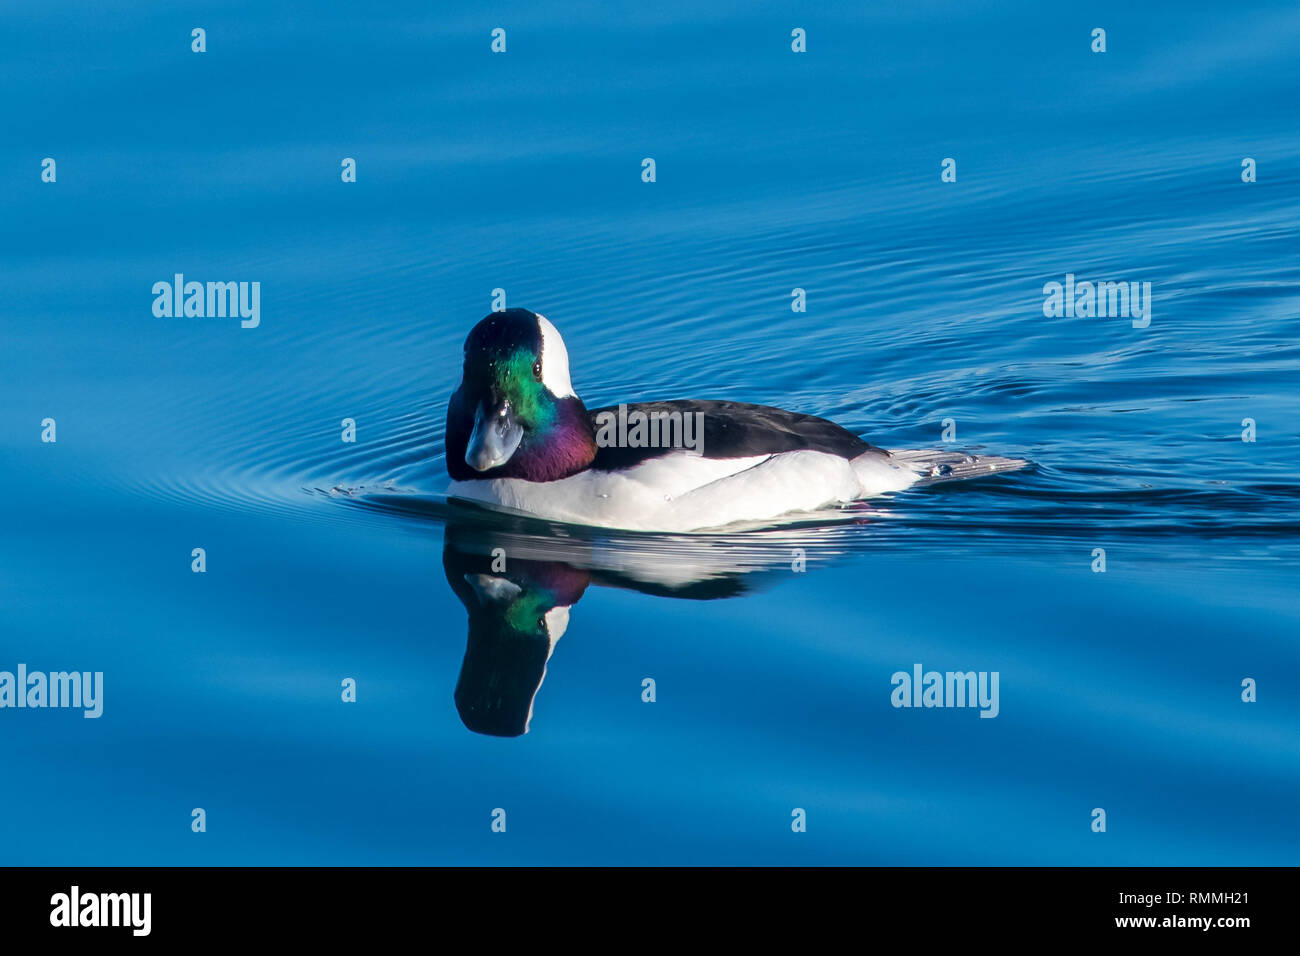 Bufflehead duck swimming, British Columbia, Canada Stock Photo